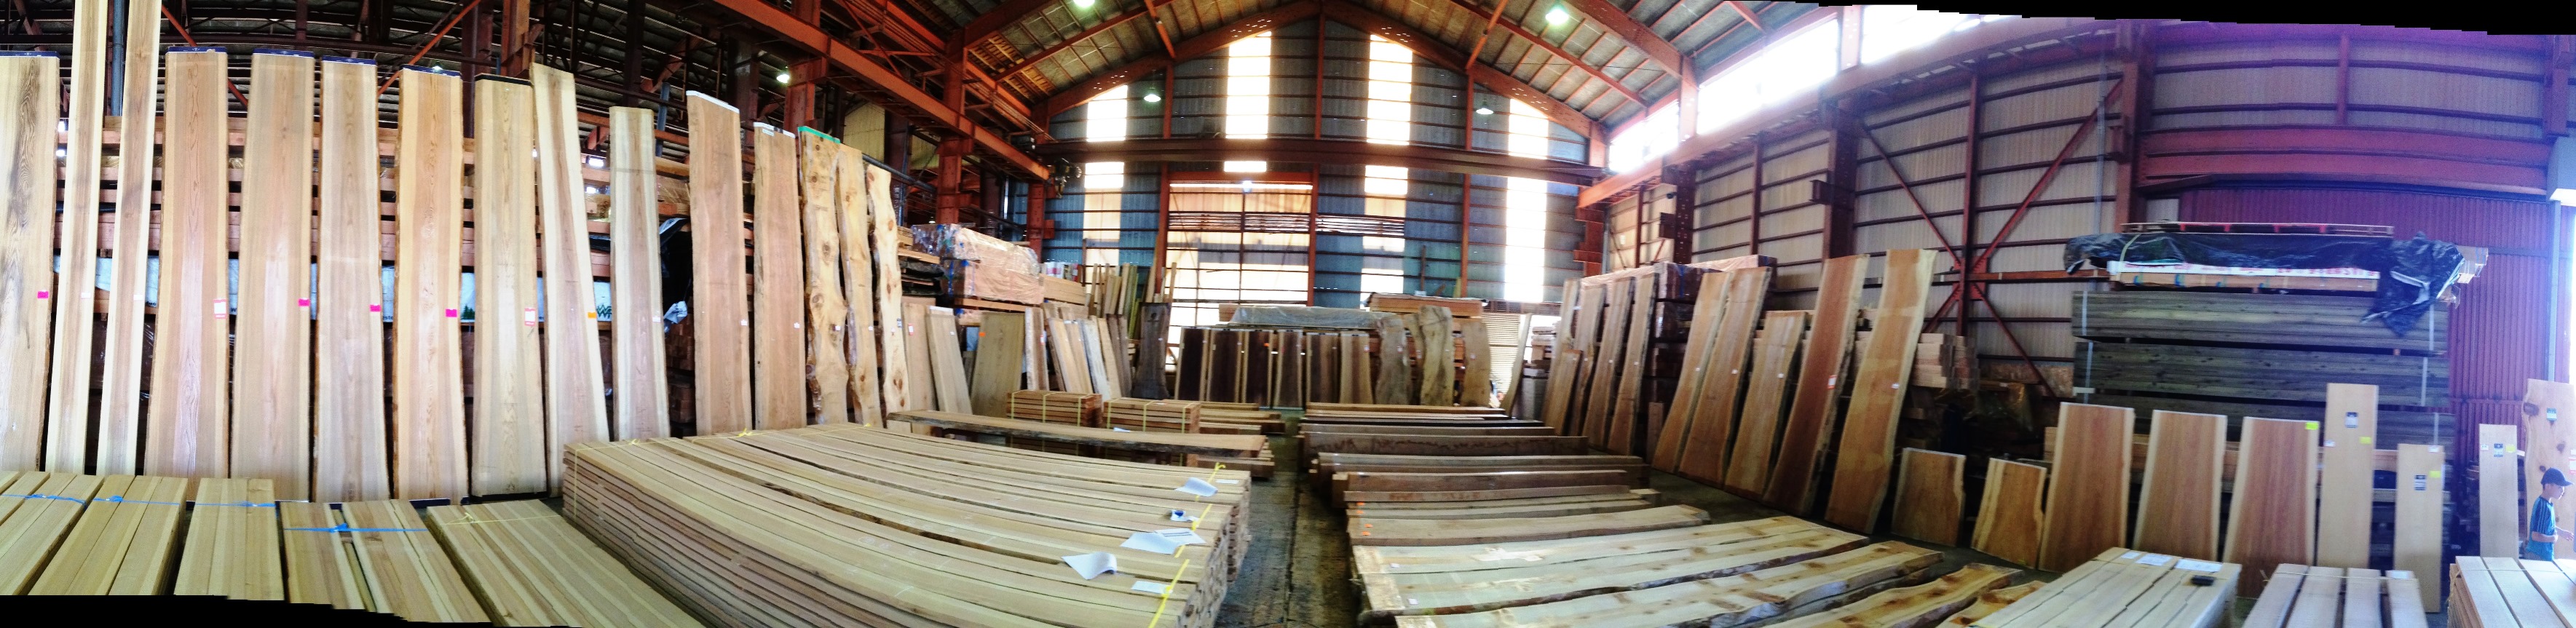 新潟の木材市場へ20140913-1